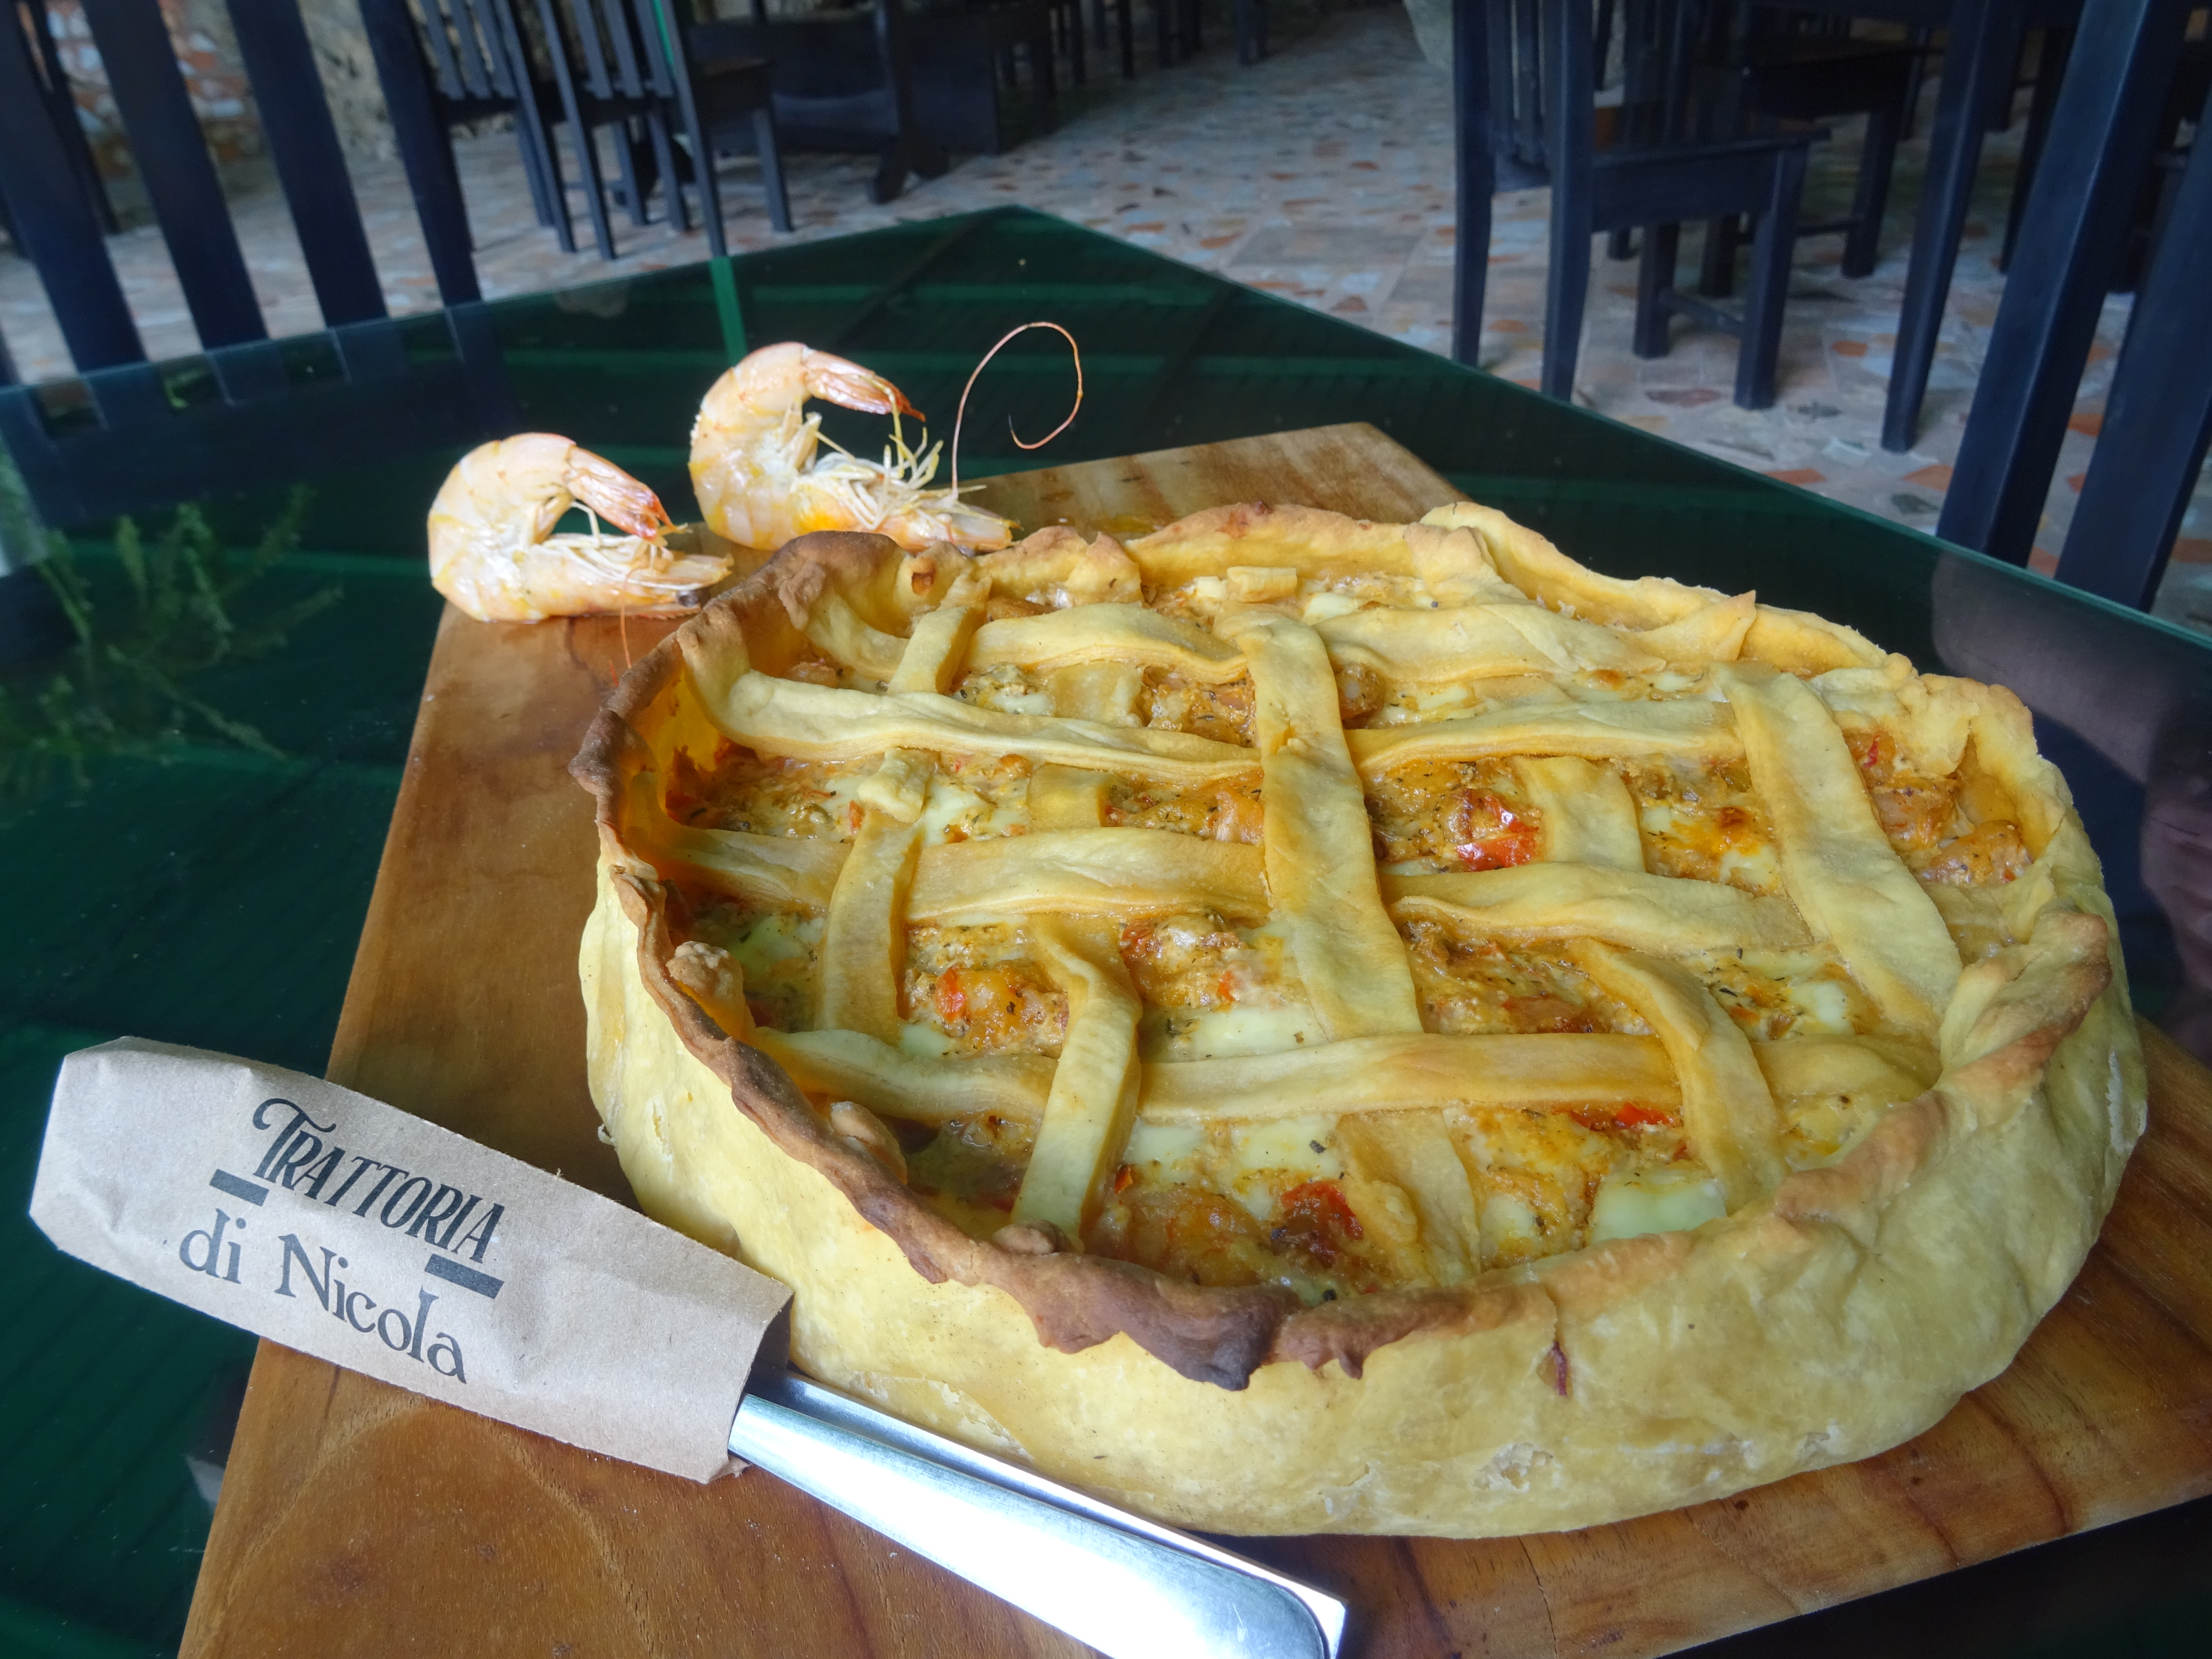 Guiso de camarones, platillo que data del siglo XIX, reproducido por el chef Nicola Fasoli, de la Trattoria di Nicola. (Foto Prensa Libre, cortesía de Nicola Fasoli)